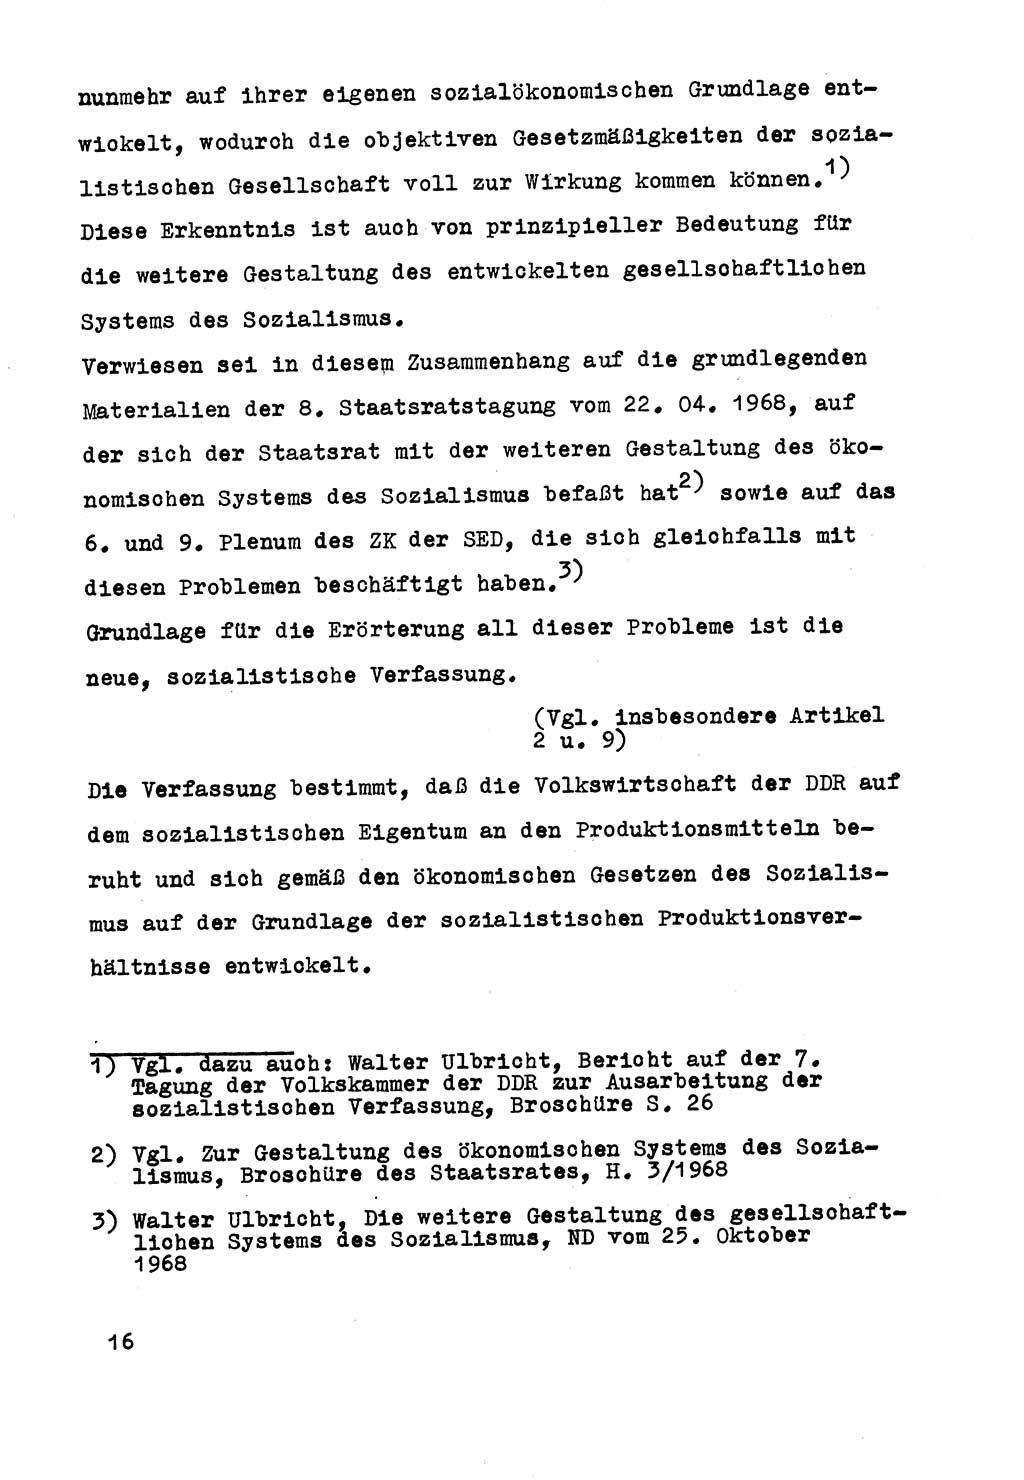 Strafrecht der DDR (Deutsche Demokratische Republik), Besonderer Teil, Lehrmaterial, Heft 5 1970, Seite 16 (Strafr. DDR BT Lehrmat. H. 5 1970, S. 16)